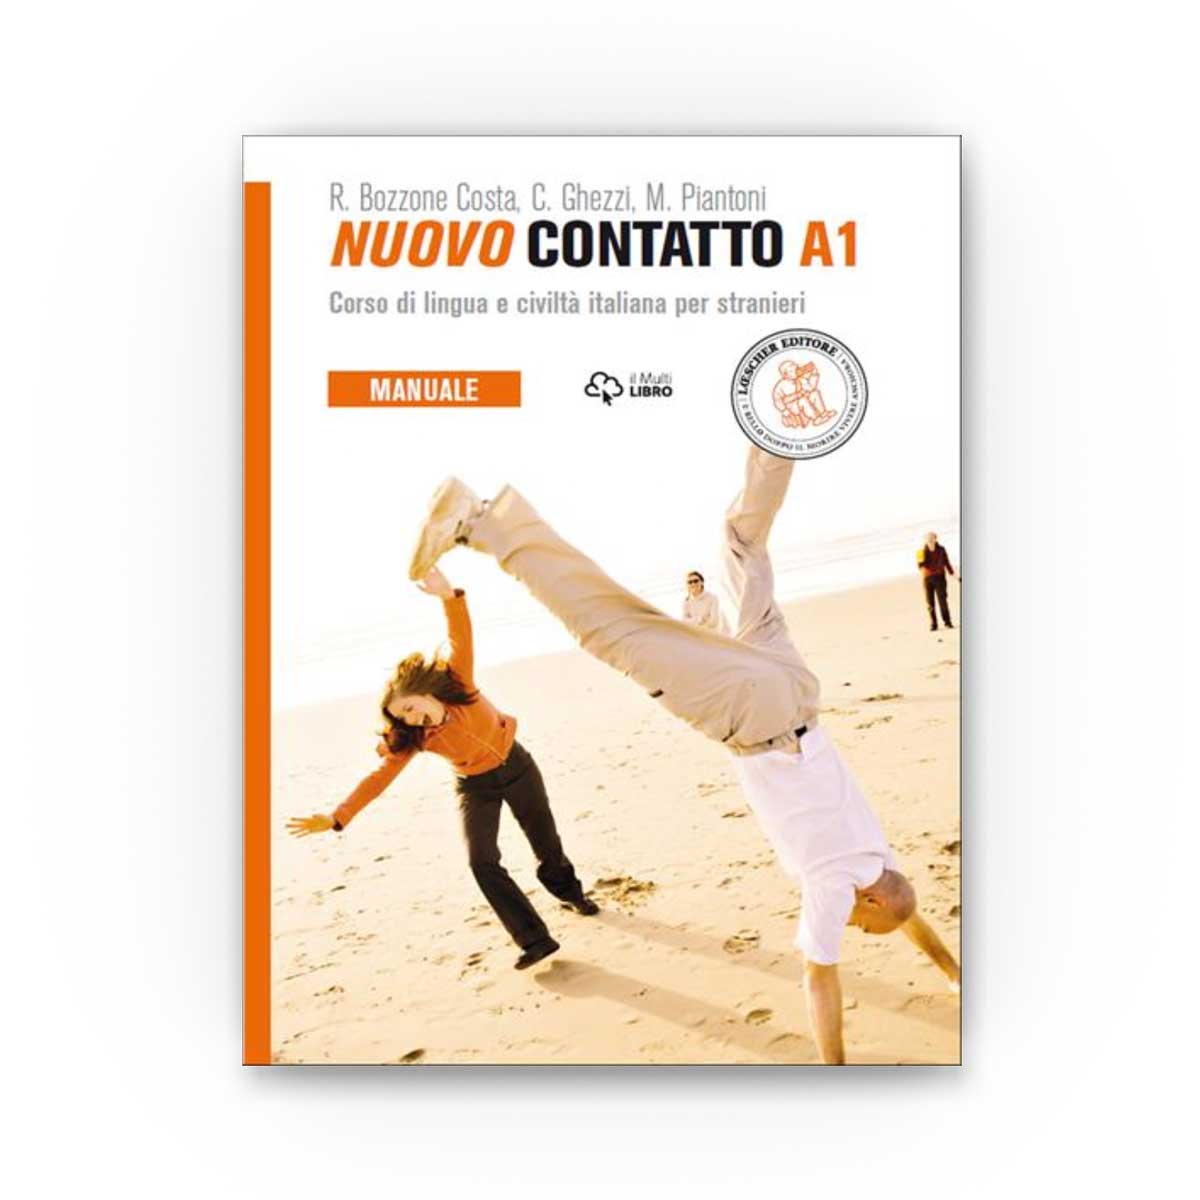 Manuale + Eserciziario + Digitale Nuovo Contatto A1 Volume A1 Corso di lingua e civiltá italiana per stranieri 